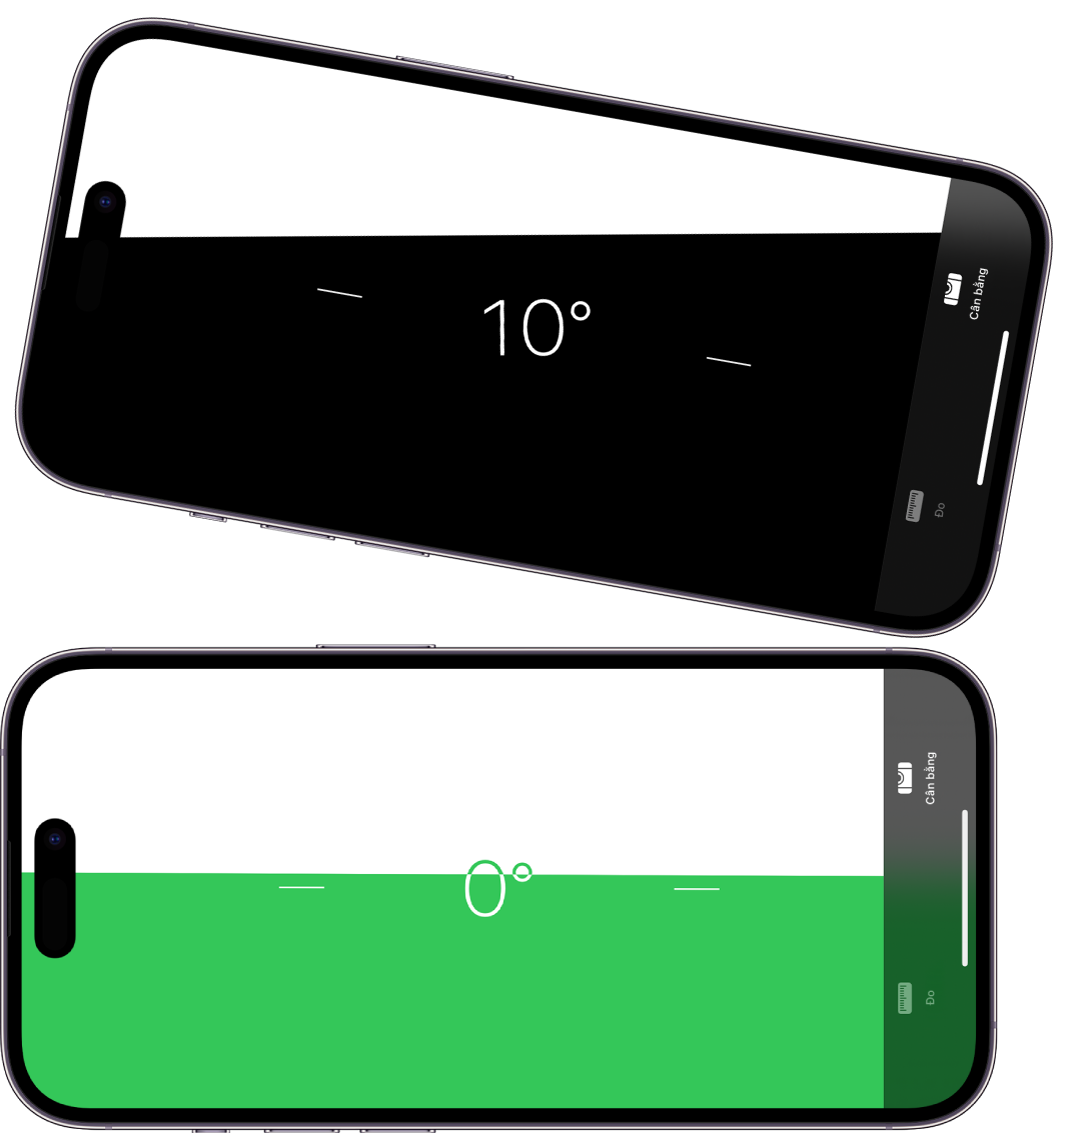 Một số hình nền đẹp để ẩn tai thỏ cho smartphone có màn hình như iPhone X